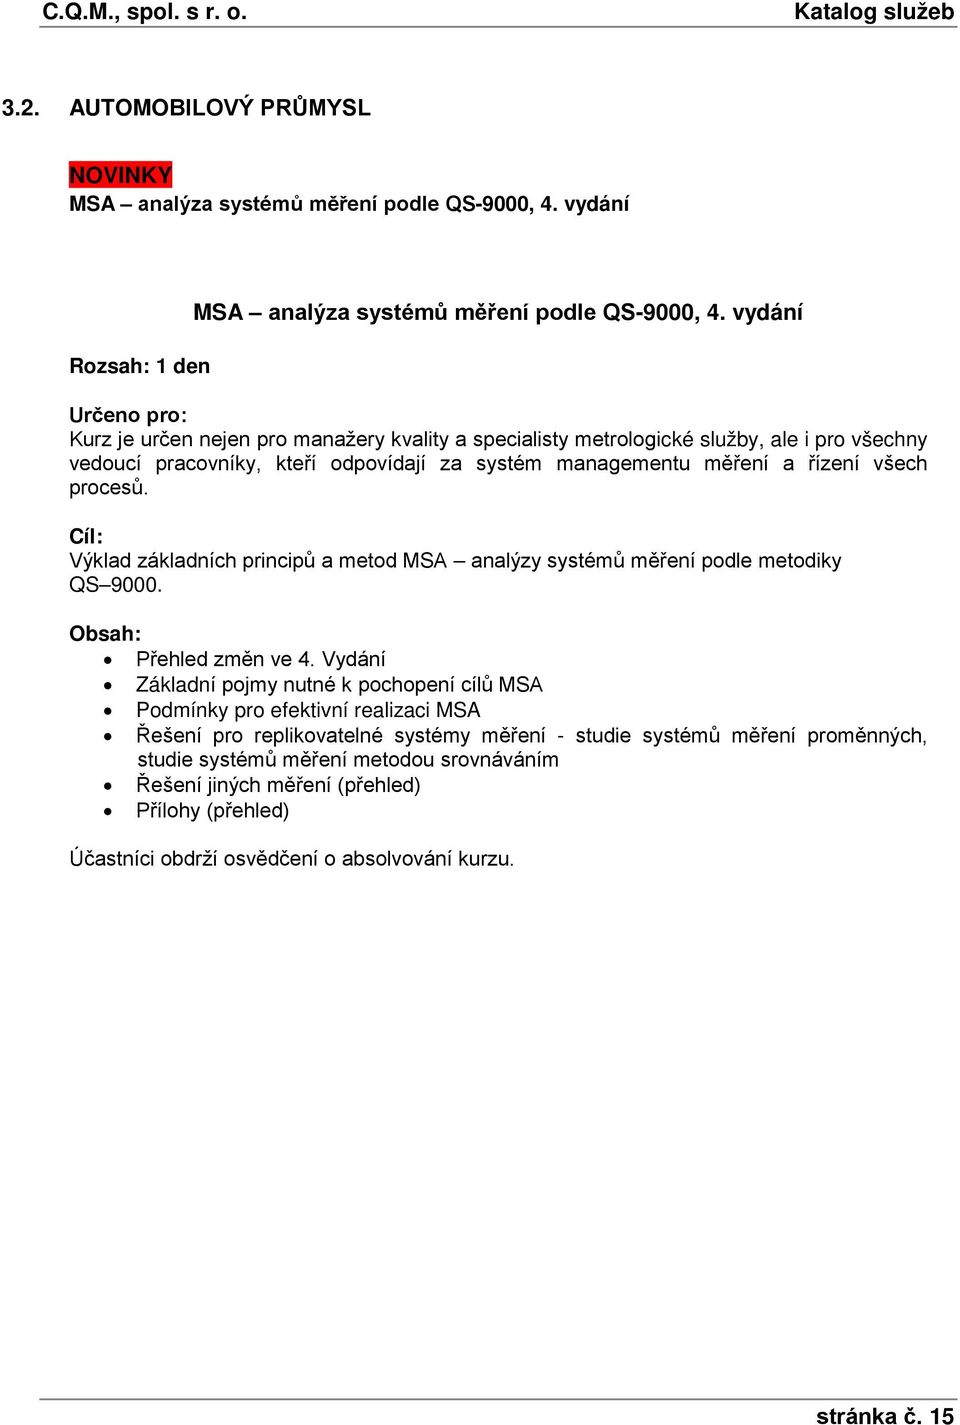 řízení všech procesů. Výklad základních principů a metod MSA analýzy systémů měření podle metodiky QS 9000. Přehled změn ve 4.